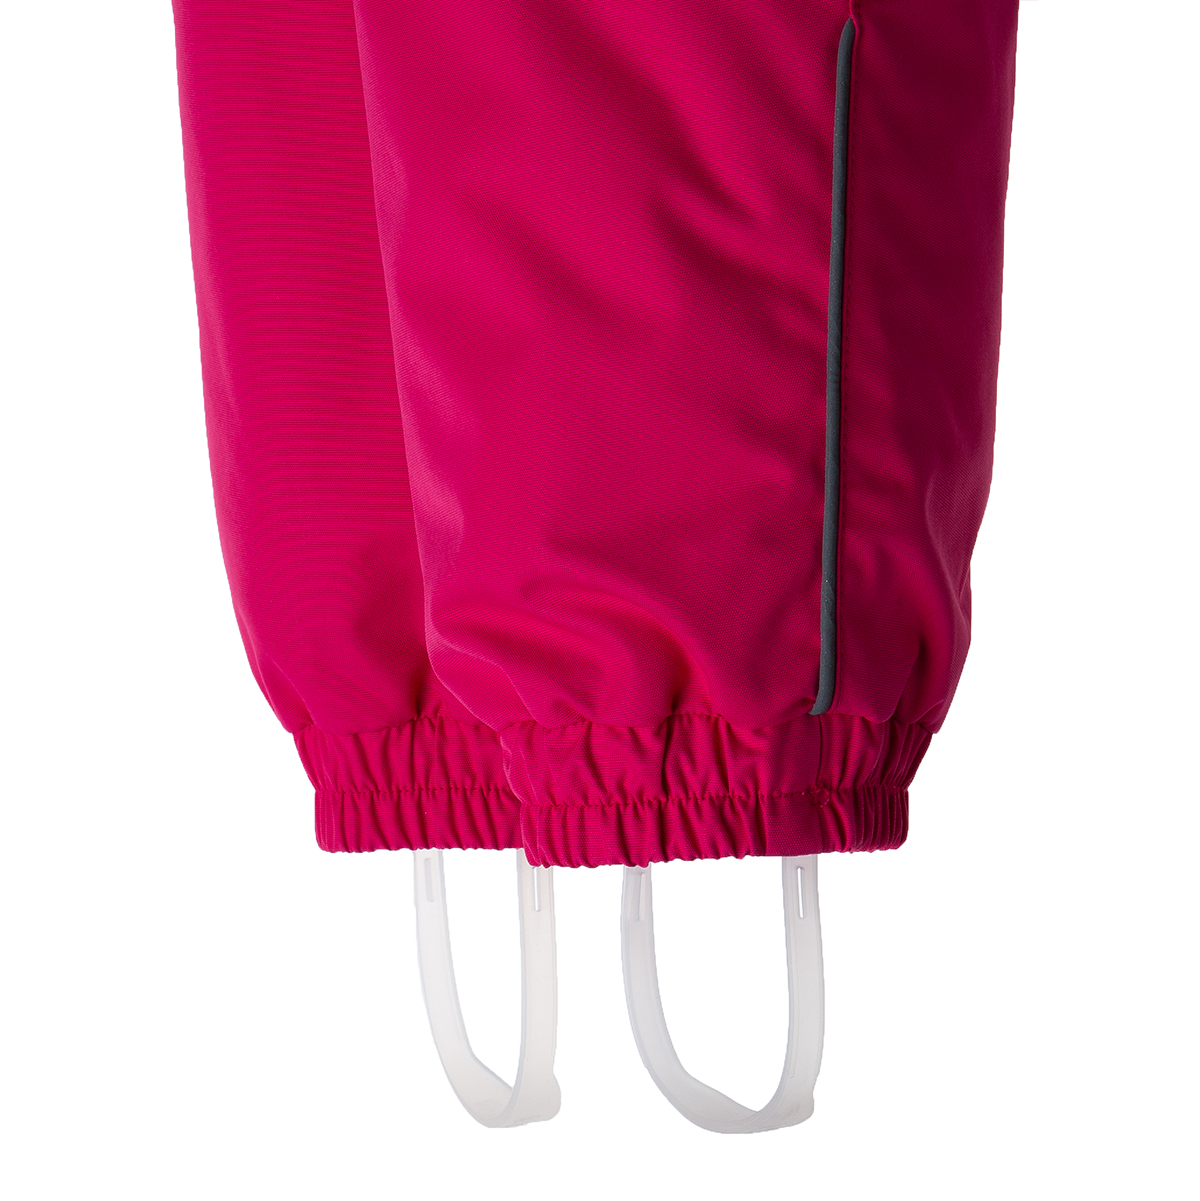 Huppa / Комплект утепленный куртка и полукомбинезон для девочки - фото 6